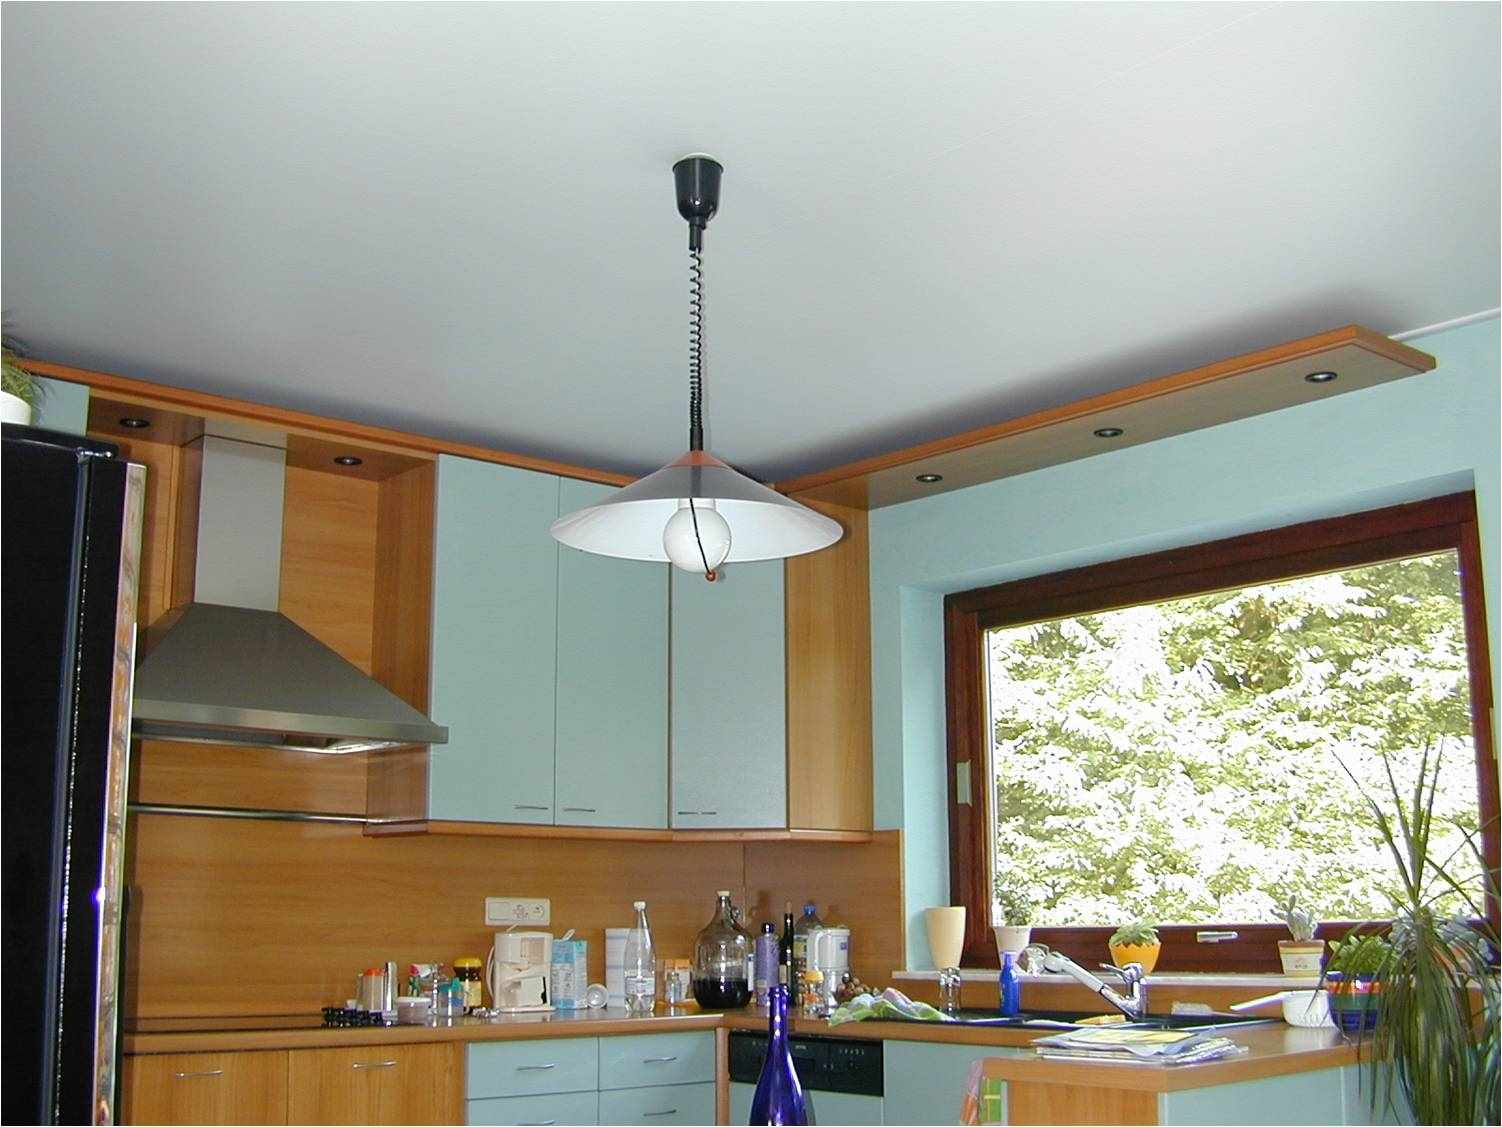 példa a konyha mennyezetének szokatlan belső tereire